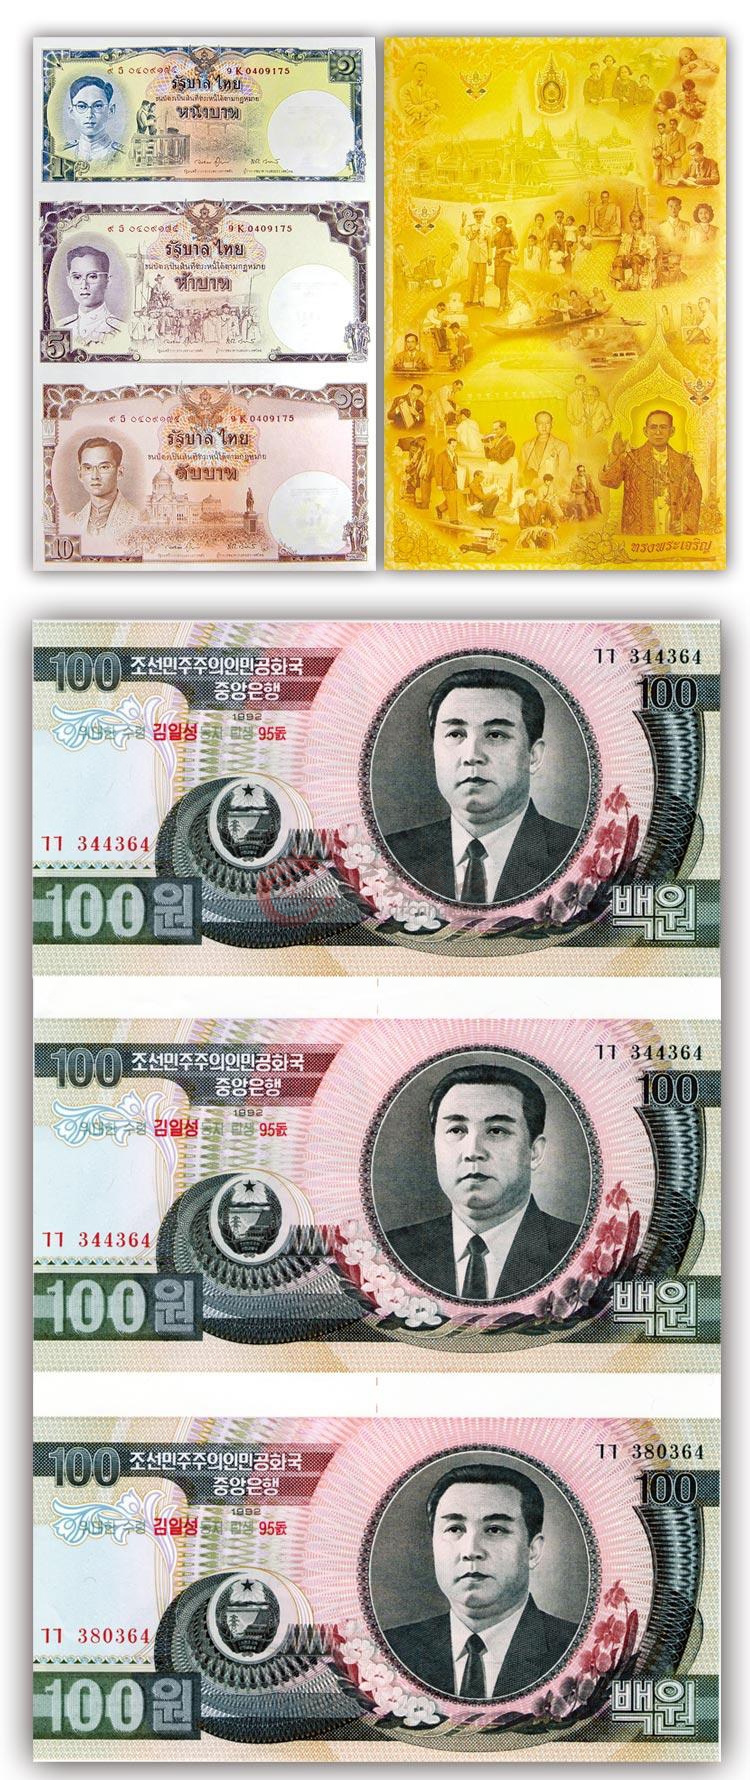 世界连体钞王整版钞大全套 收录了12大版同号连体钞